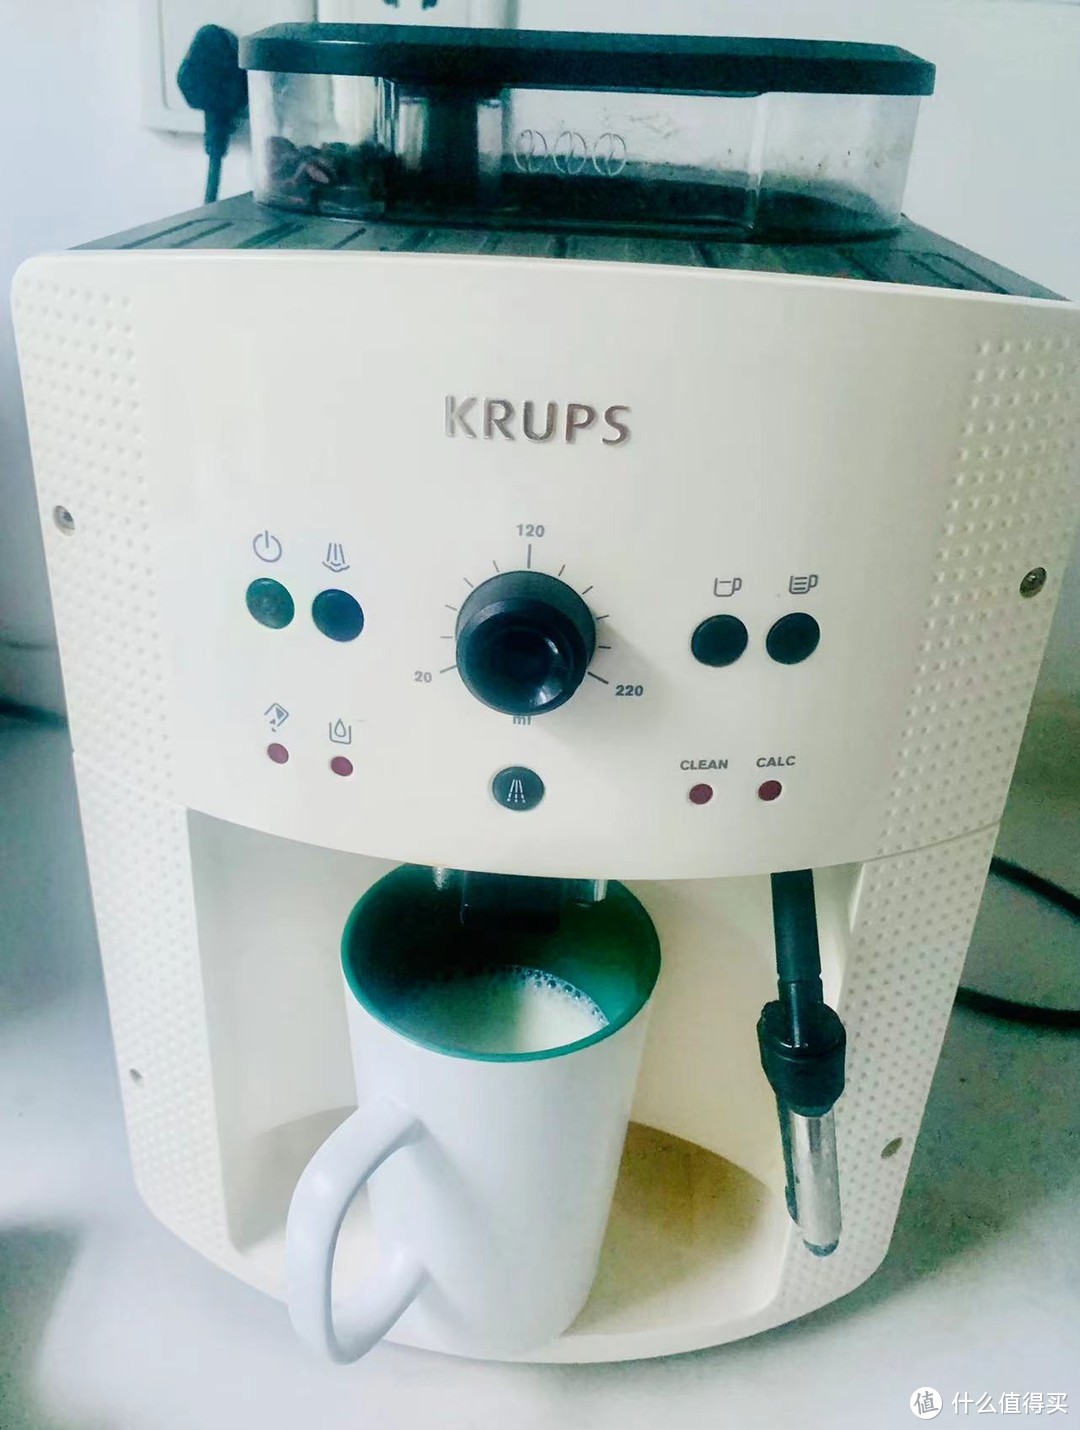 克鲁伯全自动咖啡机——让生活充满仪式感